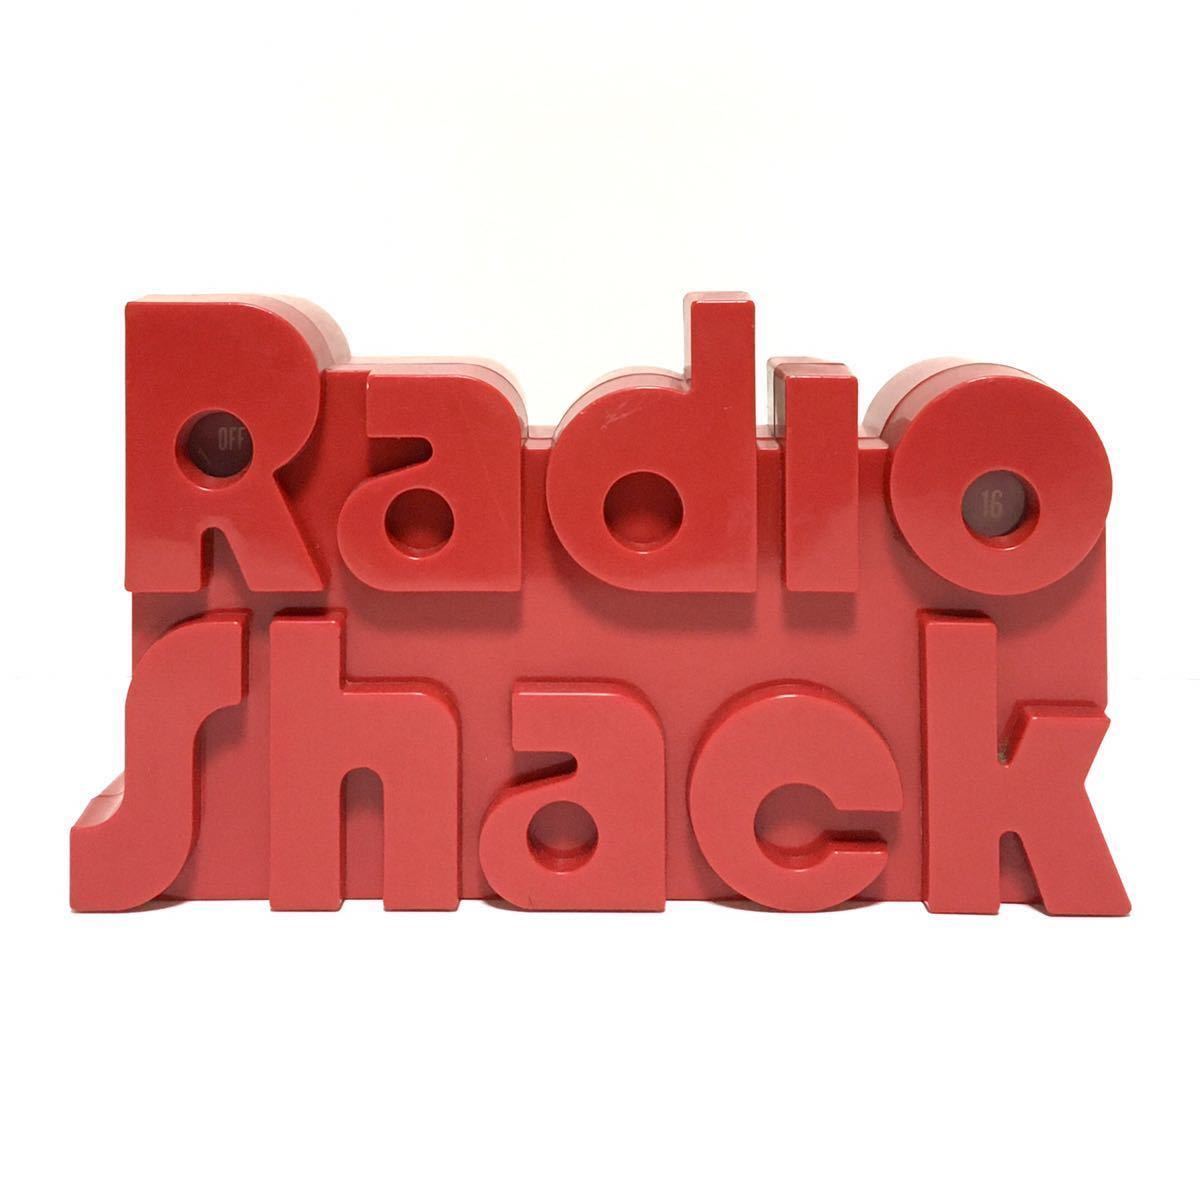 『3年保証』 Radio ★レア Shack 1 アメリカン雑貨 レトロ インテリア ビンテージ パントン スペースエイジ 80s 70s 80年代 70年代 ノベルティ ラジオ アンティーク